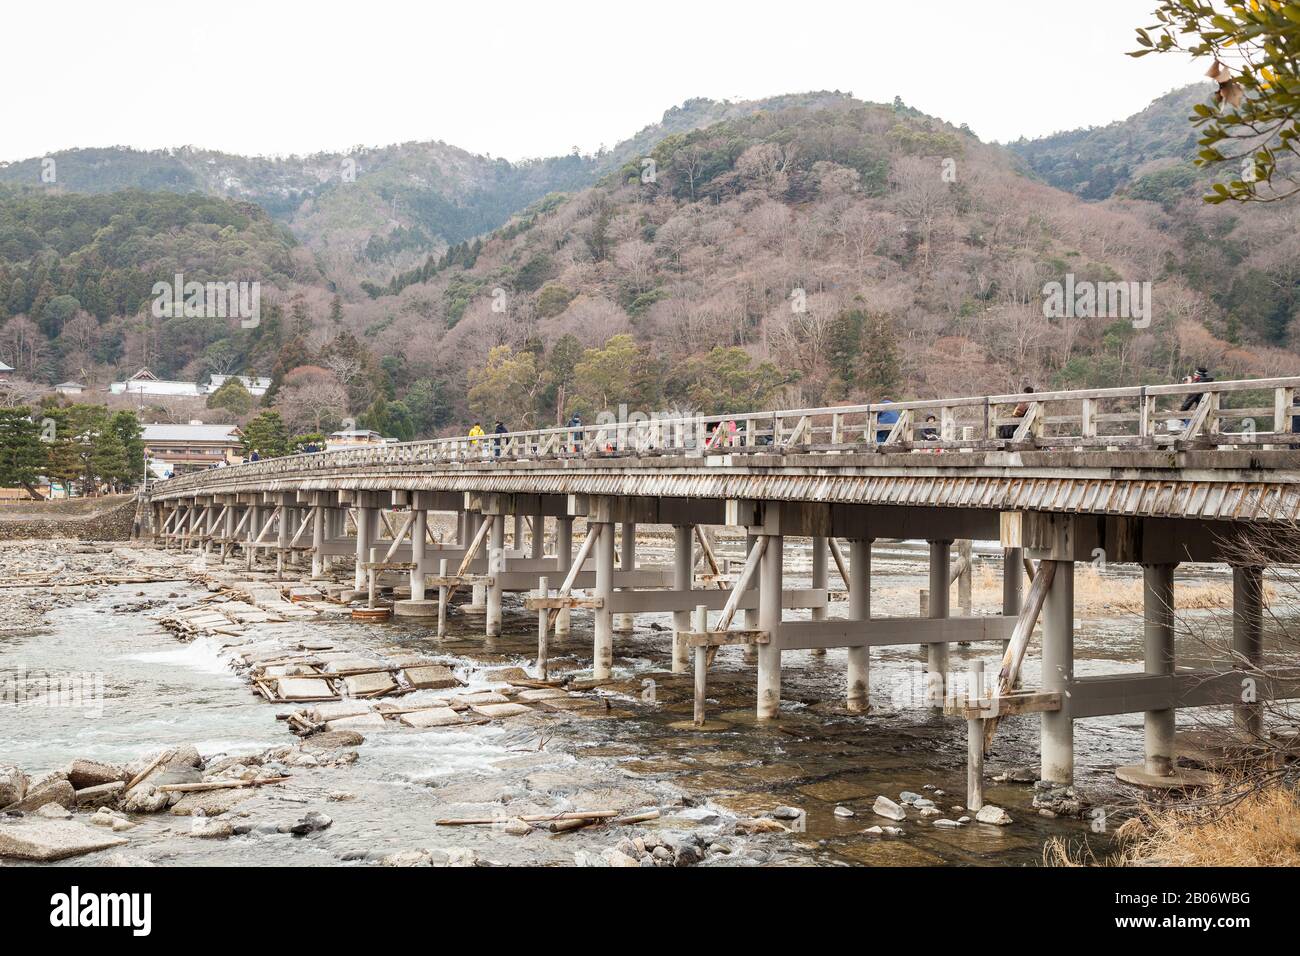 Herbsthintergrund Togetsukyo Bridge Hozu River im Arashiyama-Distrikt Kyoto, Japan, Die berühmte Togetsukyo Bridge in Arashiyama Kyoto, Japan. Stockfoto